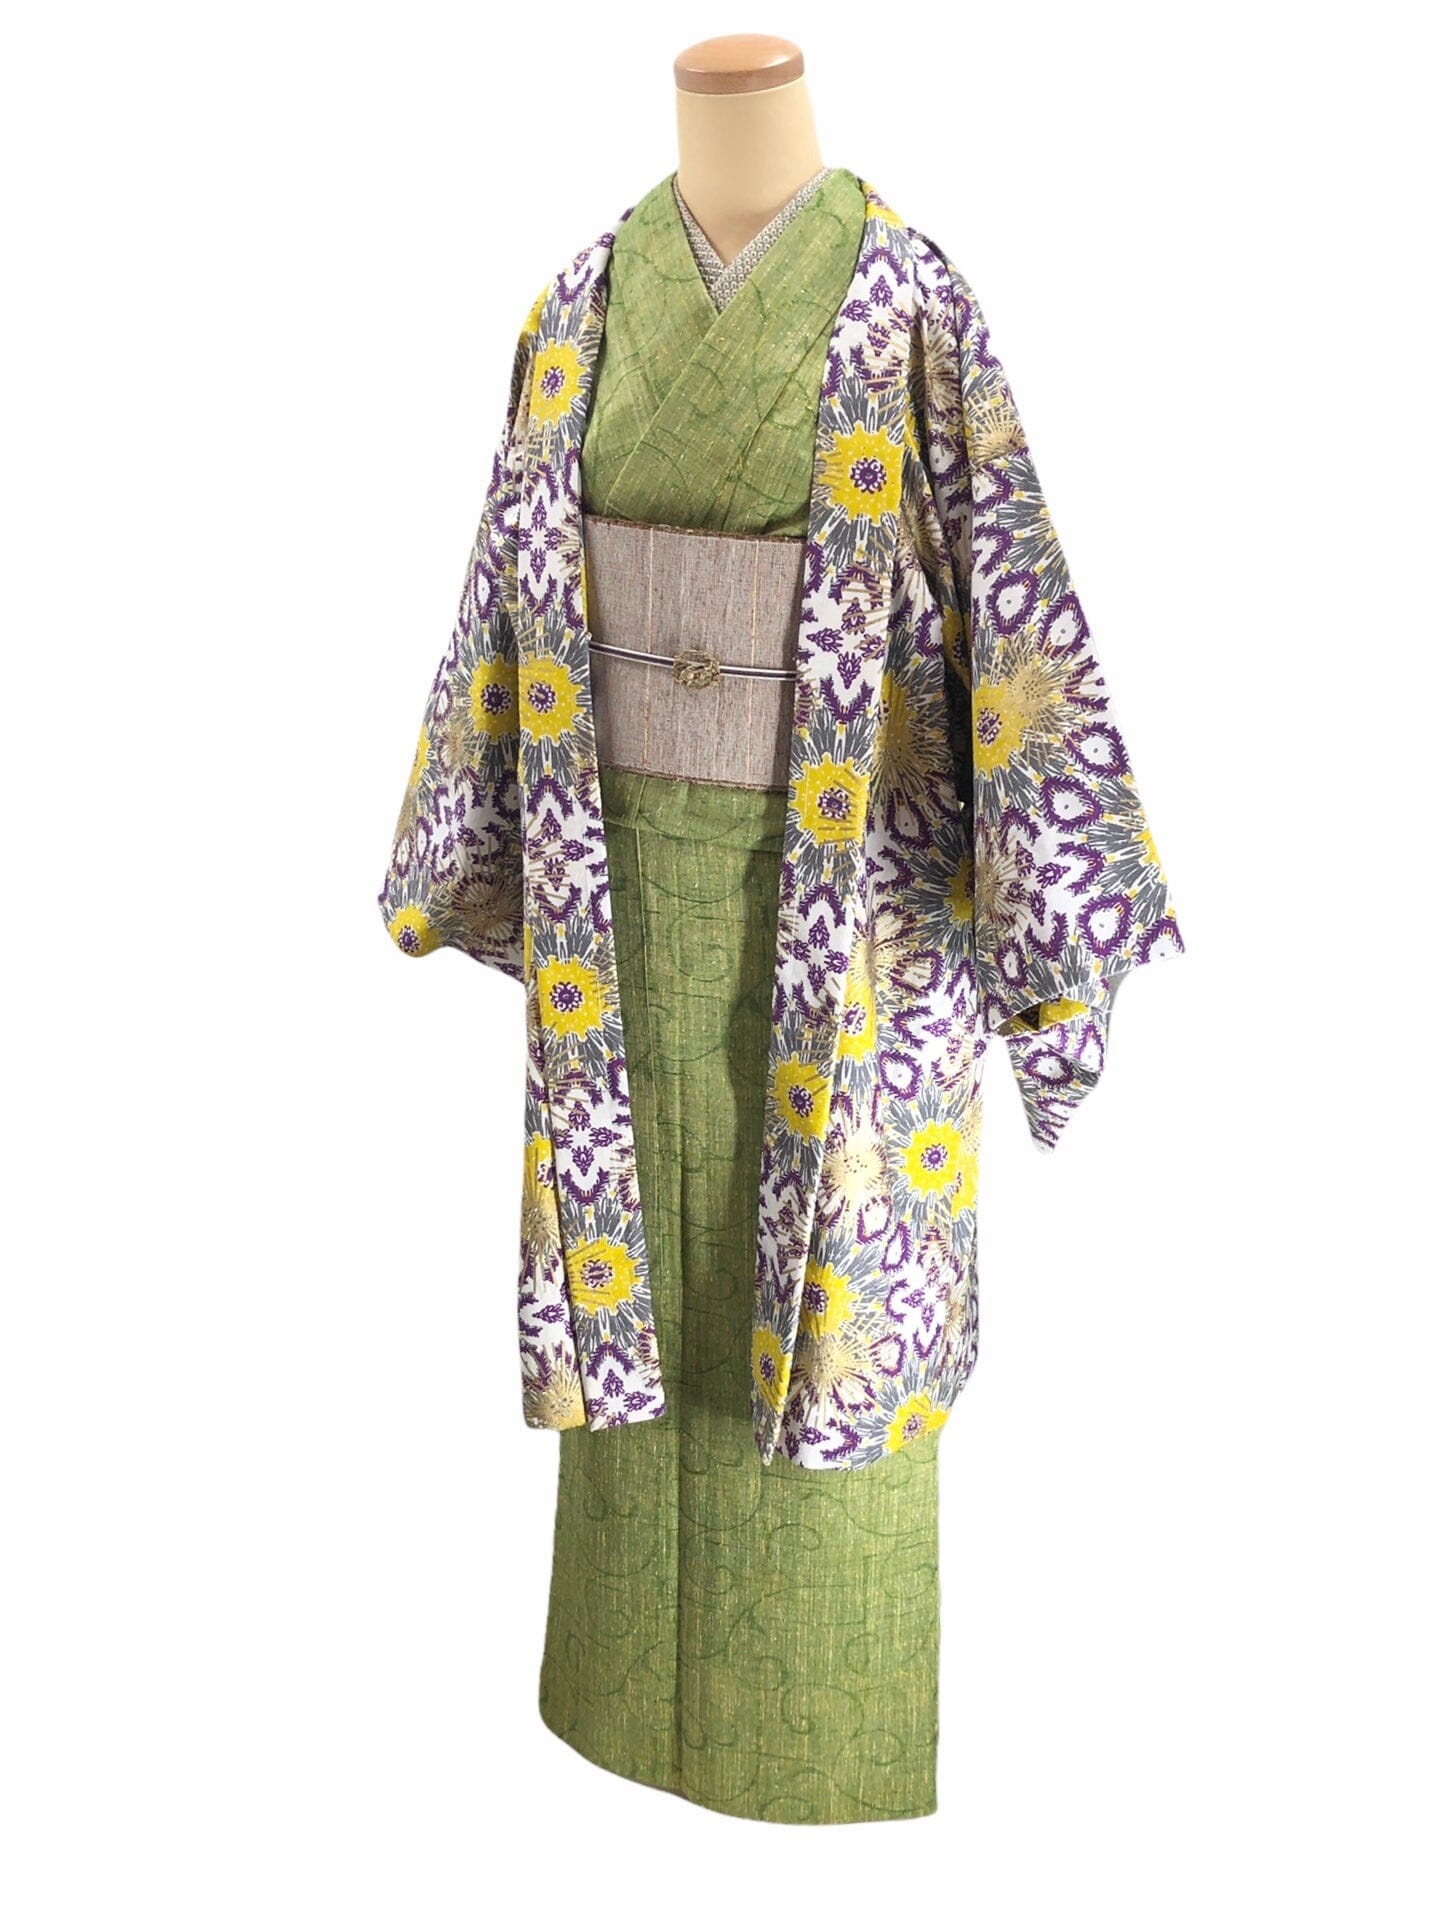 saasaawa 和裁✖️ガーナの布 単衣羽織※着物や帯は参考商品 羽織 saasaawa 